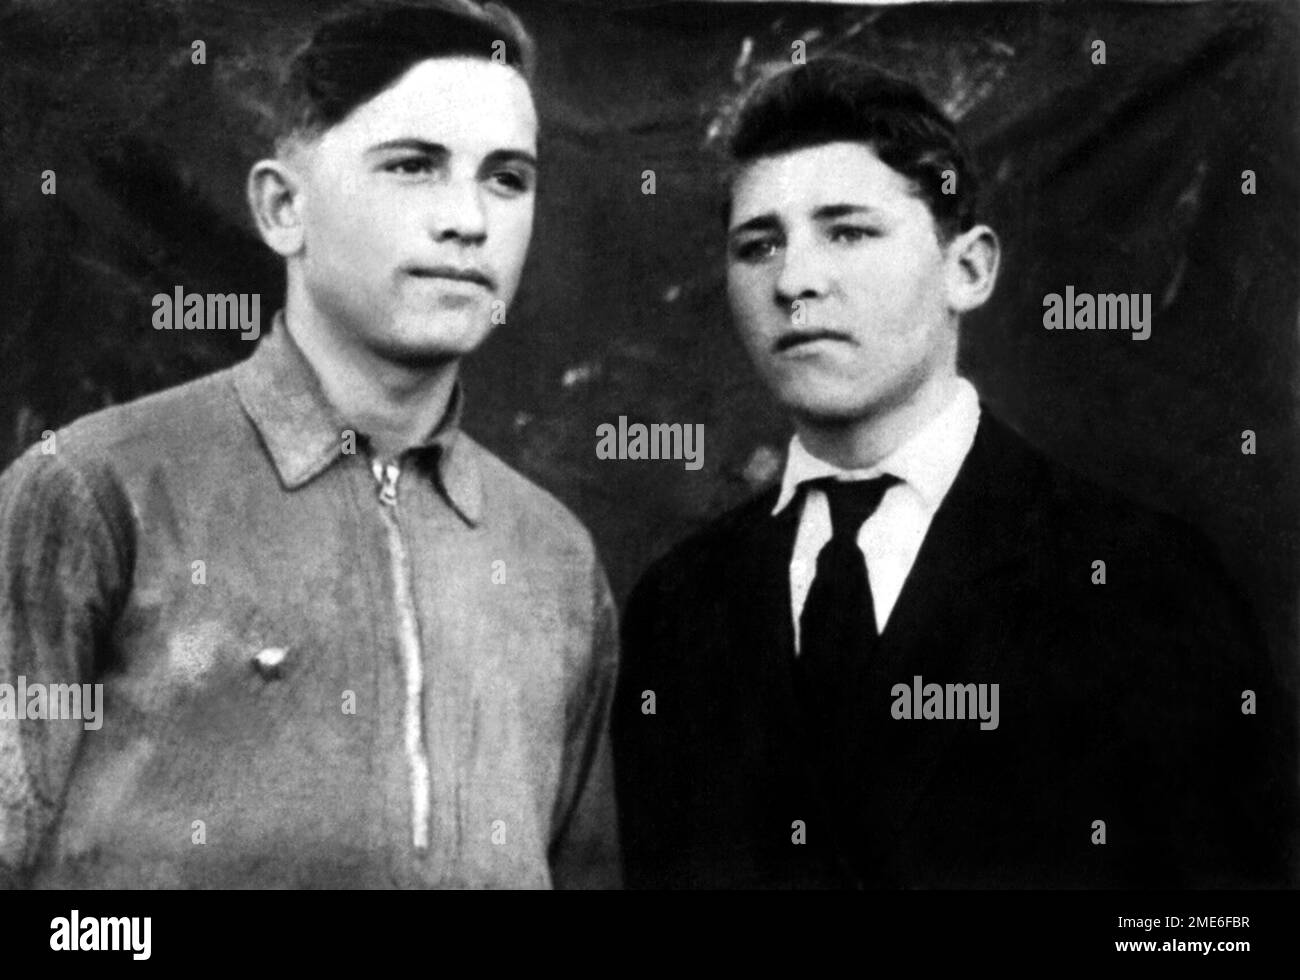 1947 ca , URSS : il presidente di URSS MIHAIL GORBACHEV ( 1931 - 2022 ), a destra in questa foto, quando era giovane di 16 anni con l'amico e cugino FJODOR WASSILJEWITSCH . Premio Nobel per la pace Winnerof nel 1990 . Fotografo sconosciuto .- Mikhail Sergeyevich Gorbache?v - GORBACIOV - GORBACIOF - FOTO STORICHE - STORIA - POLITICA - POLITICA - POLITICO - POLITICO - personalità da giovane giovani - personalità quando era giovane - INFANZIA - INFANZIA - BAMBINO - BAMBINI - BAMBINO - BAMBINI - RUSSIA - RUSSO - RUSSO - UNIONE SOVIETICA - COMUNISTA - COMUNISMO - COMUNISMO - Foto Stock